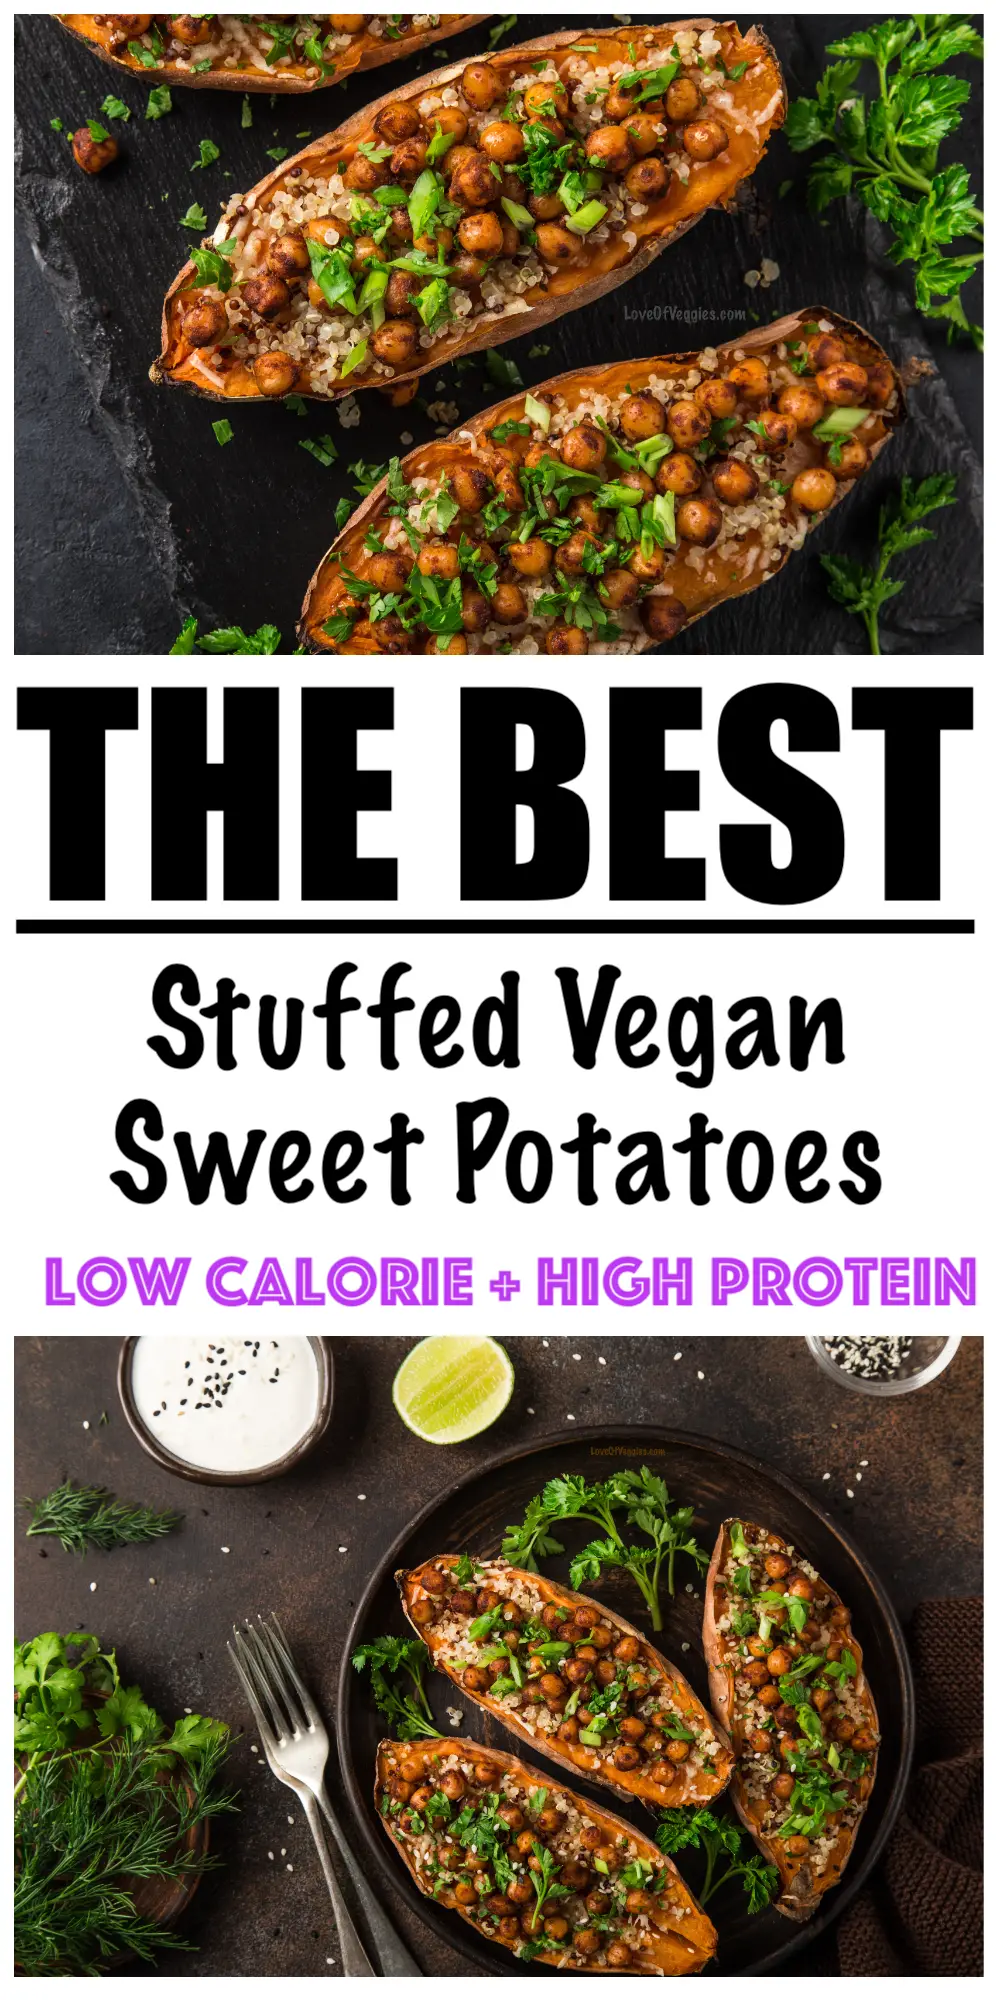 Stuffed Vegan Sweet Potatoes Recipe